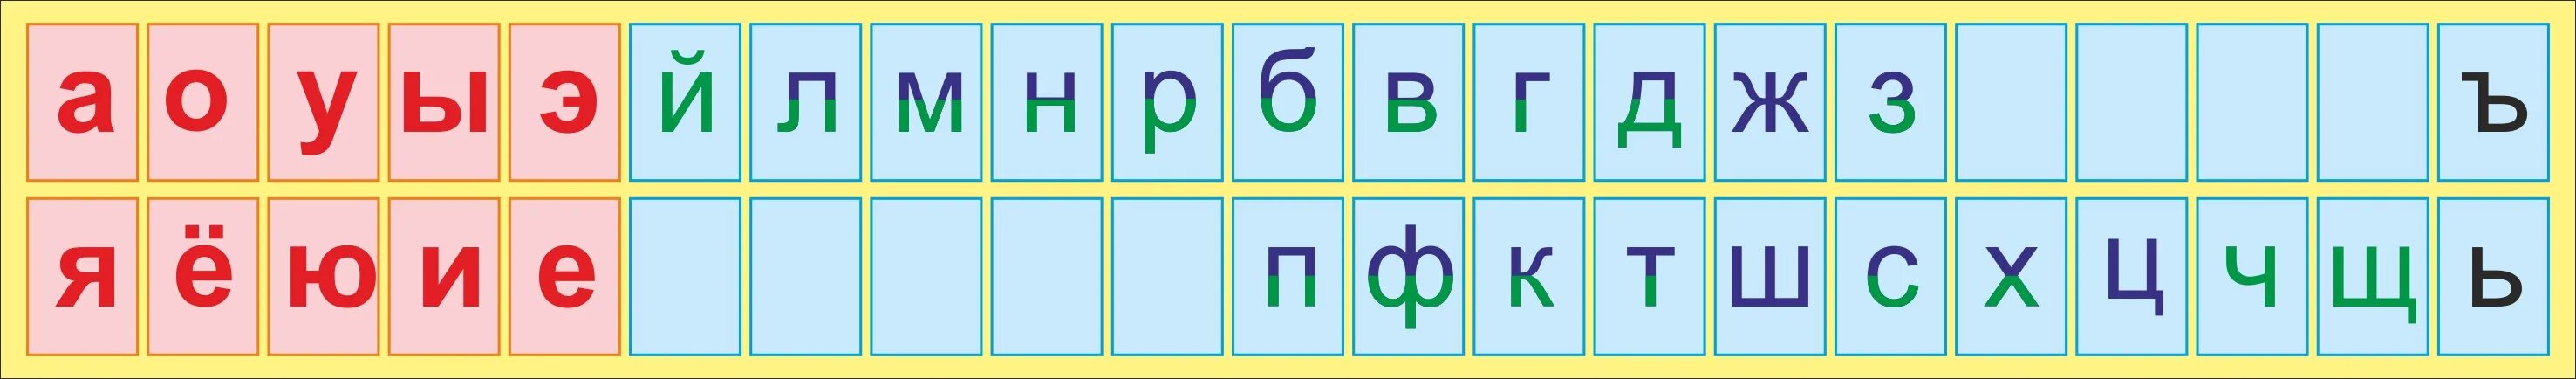 Слова большого количества согласных. Алфавит гласные и согласные буквы. Лента букв. Русский алфавит с гласными и согласными буквами. Азбука гласных и согласных букв.